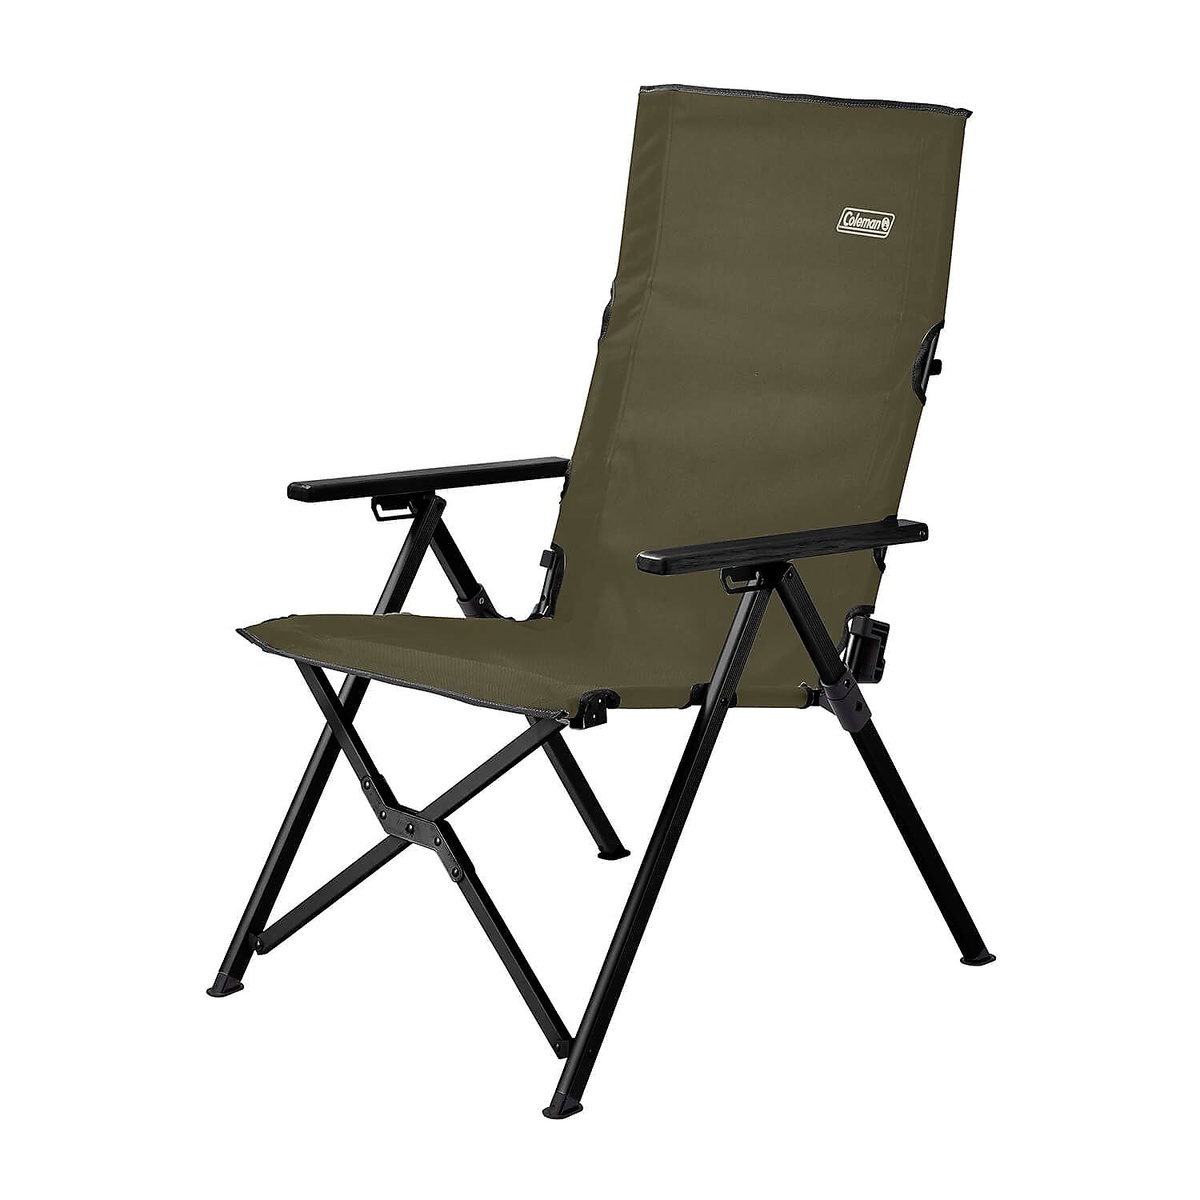 コールマン (COLEMAN) レイチェア(オリーブ) キャンプ用品 ファミリーチェア 椅子 オリーブ 2000033808